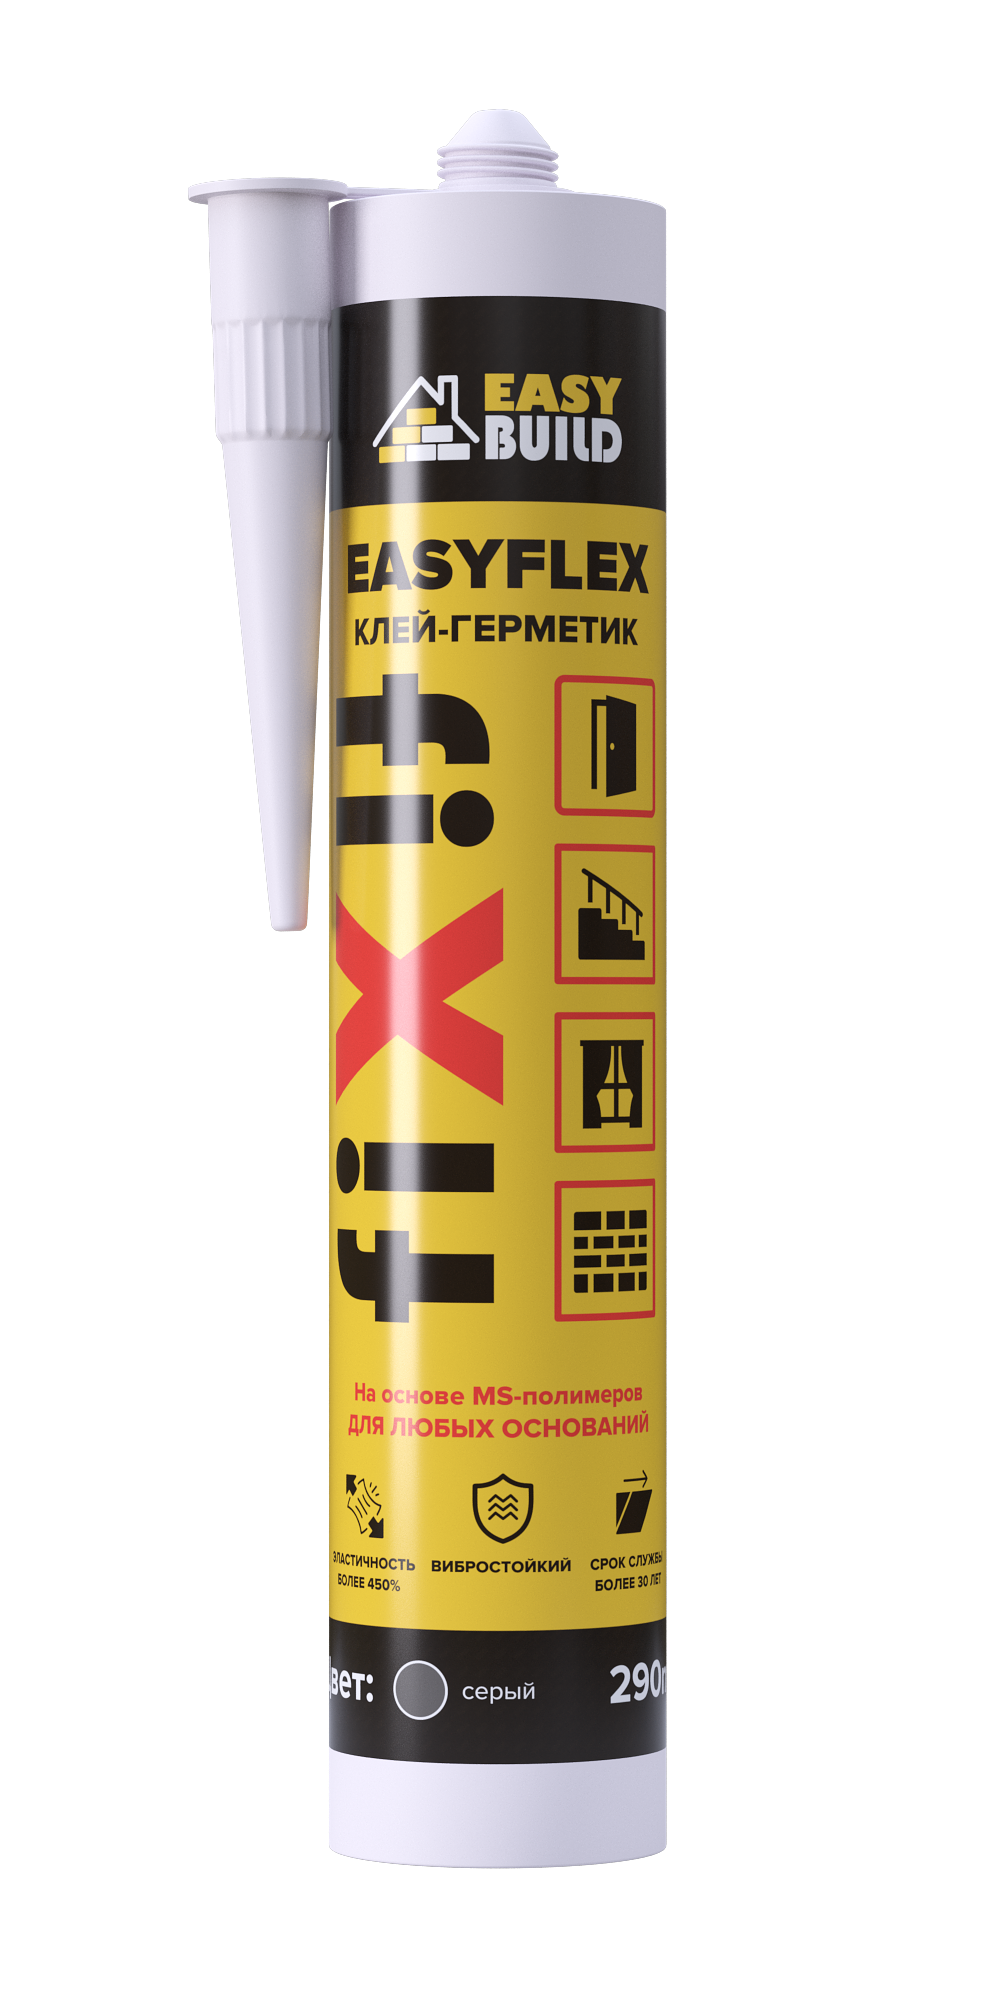 Клей-герметик мультифункциональный Easyflex Fix серый